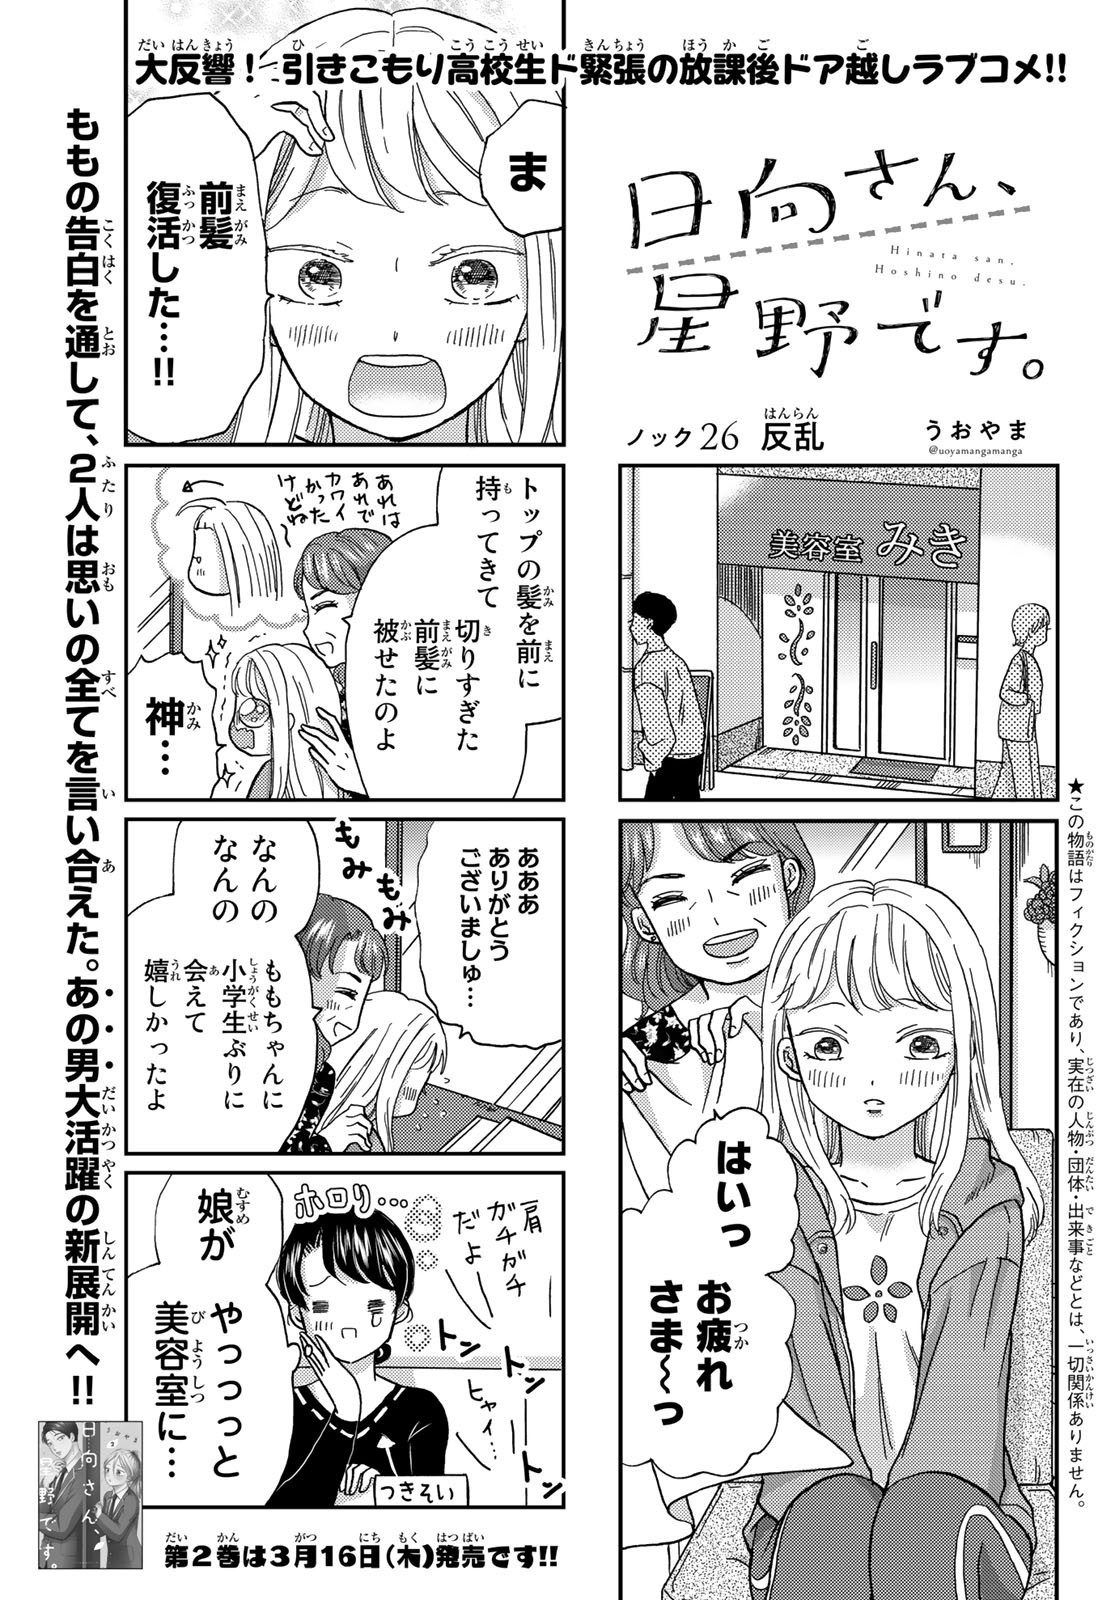 Hinata-san, Hoshino desu. - Chapter 026 - Page 1